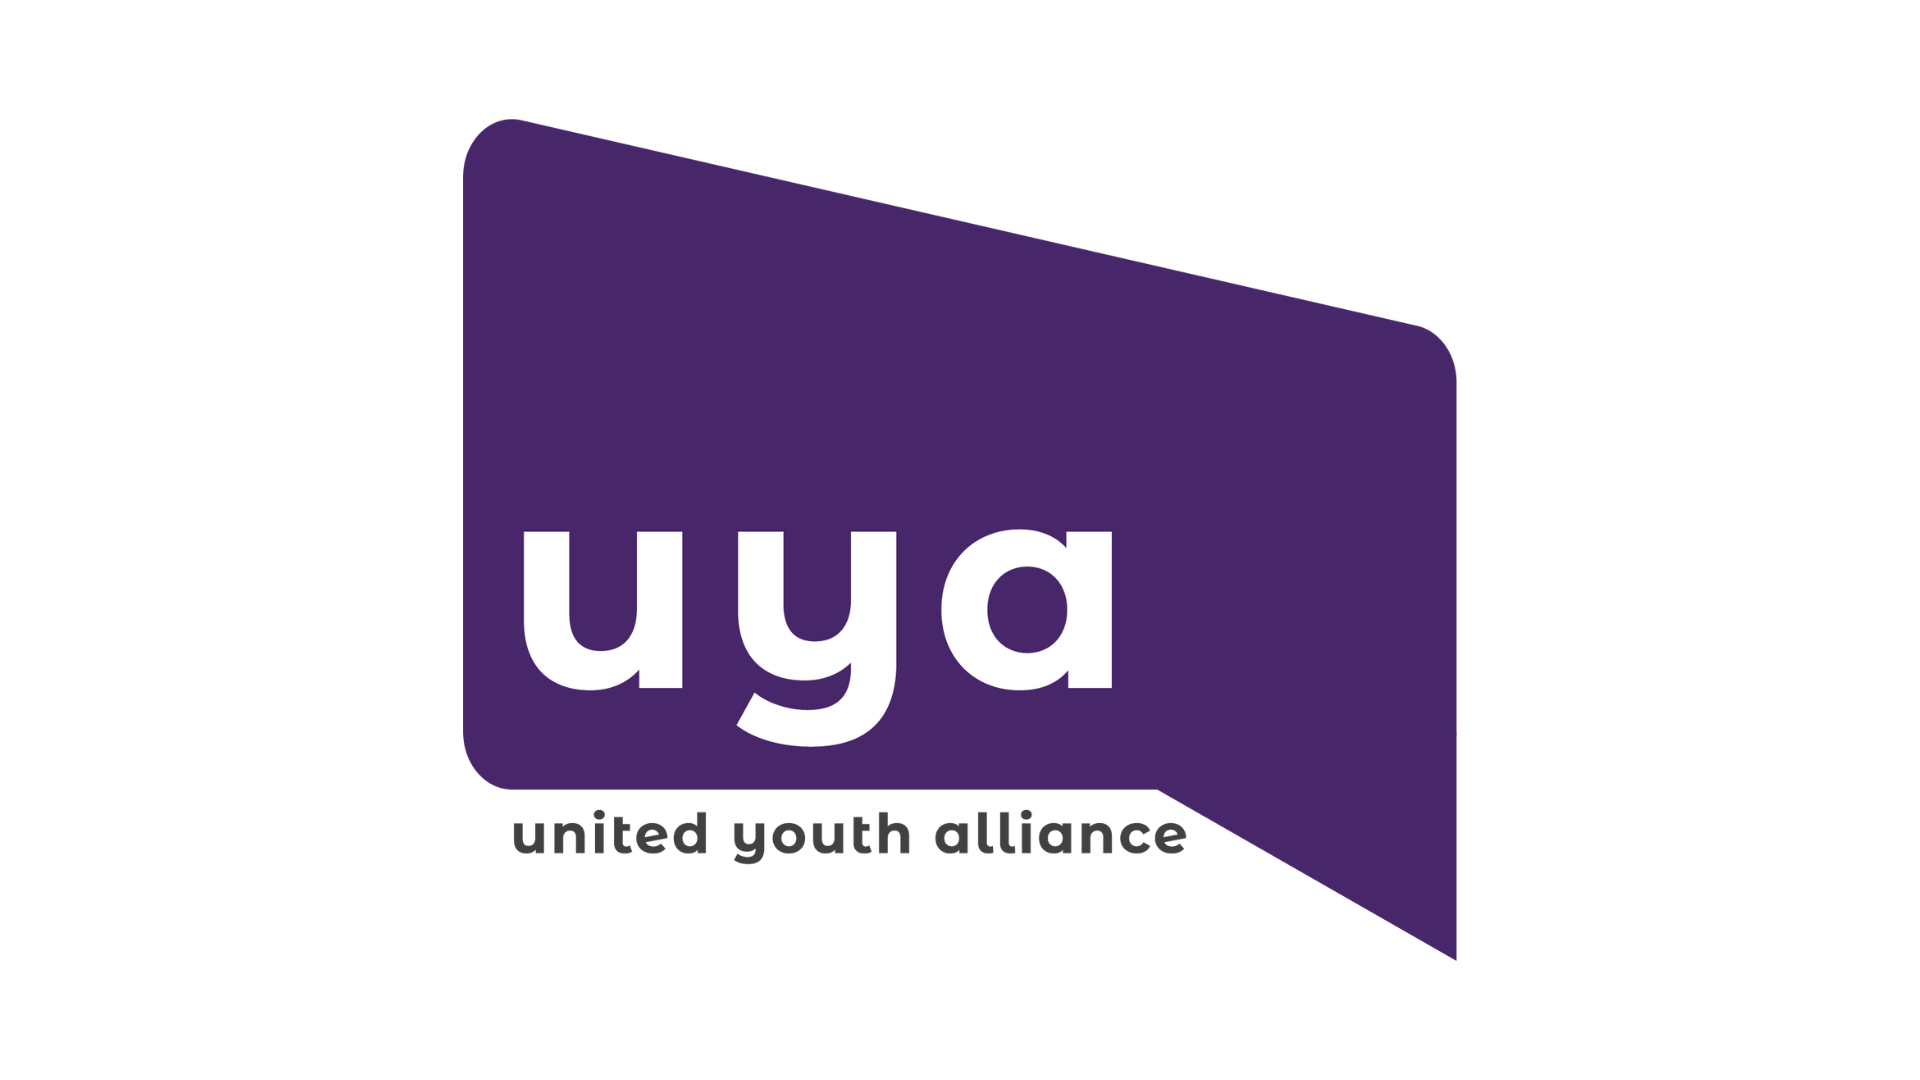 United Youth Alliance